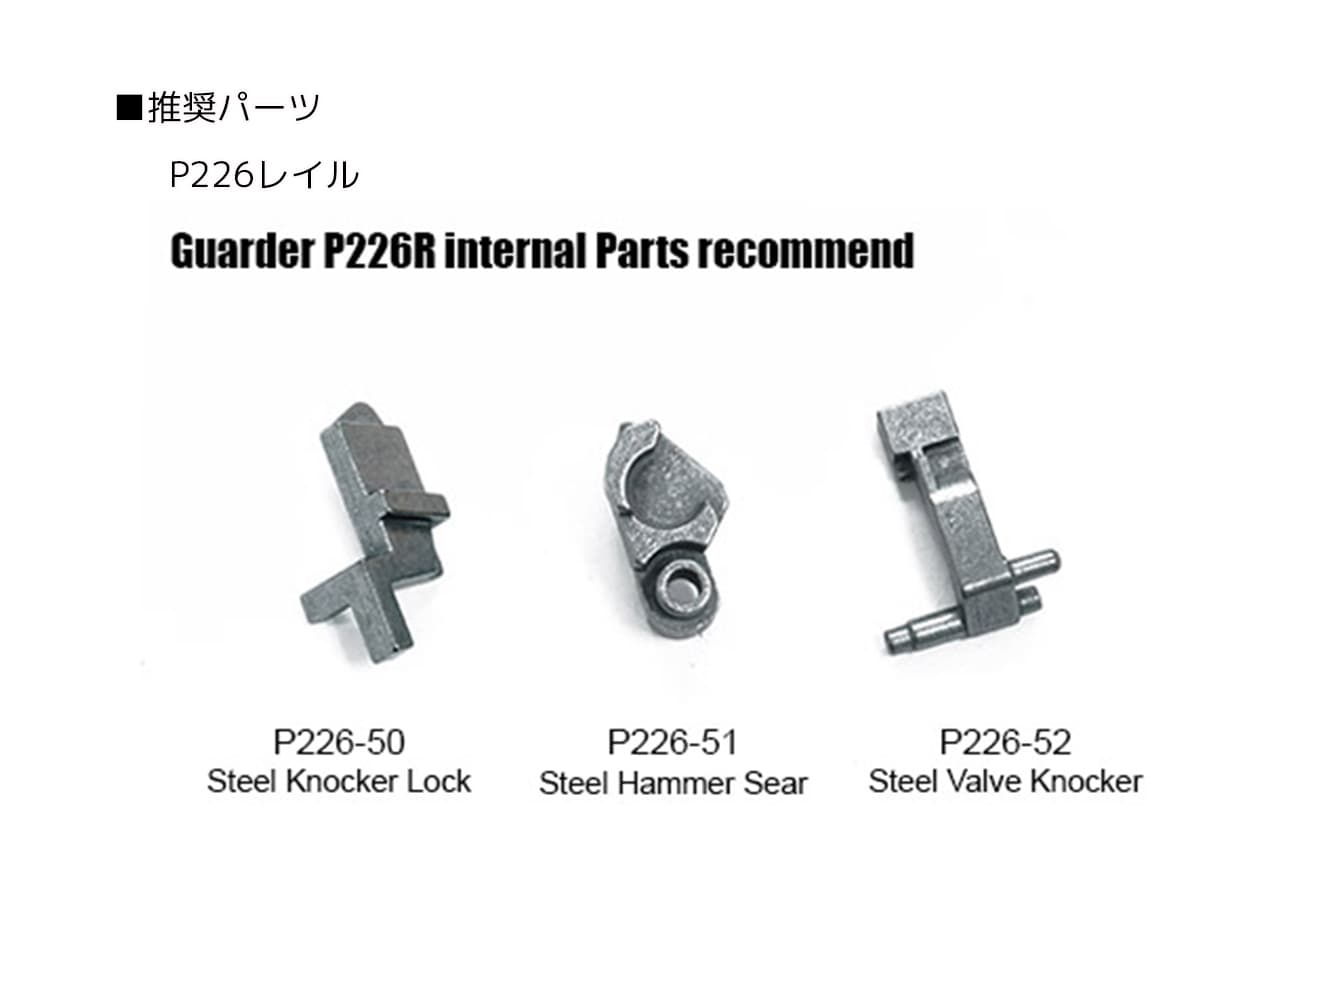 GUARDER スチール ハンマーシアー for マルイ P226R